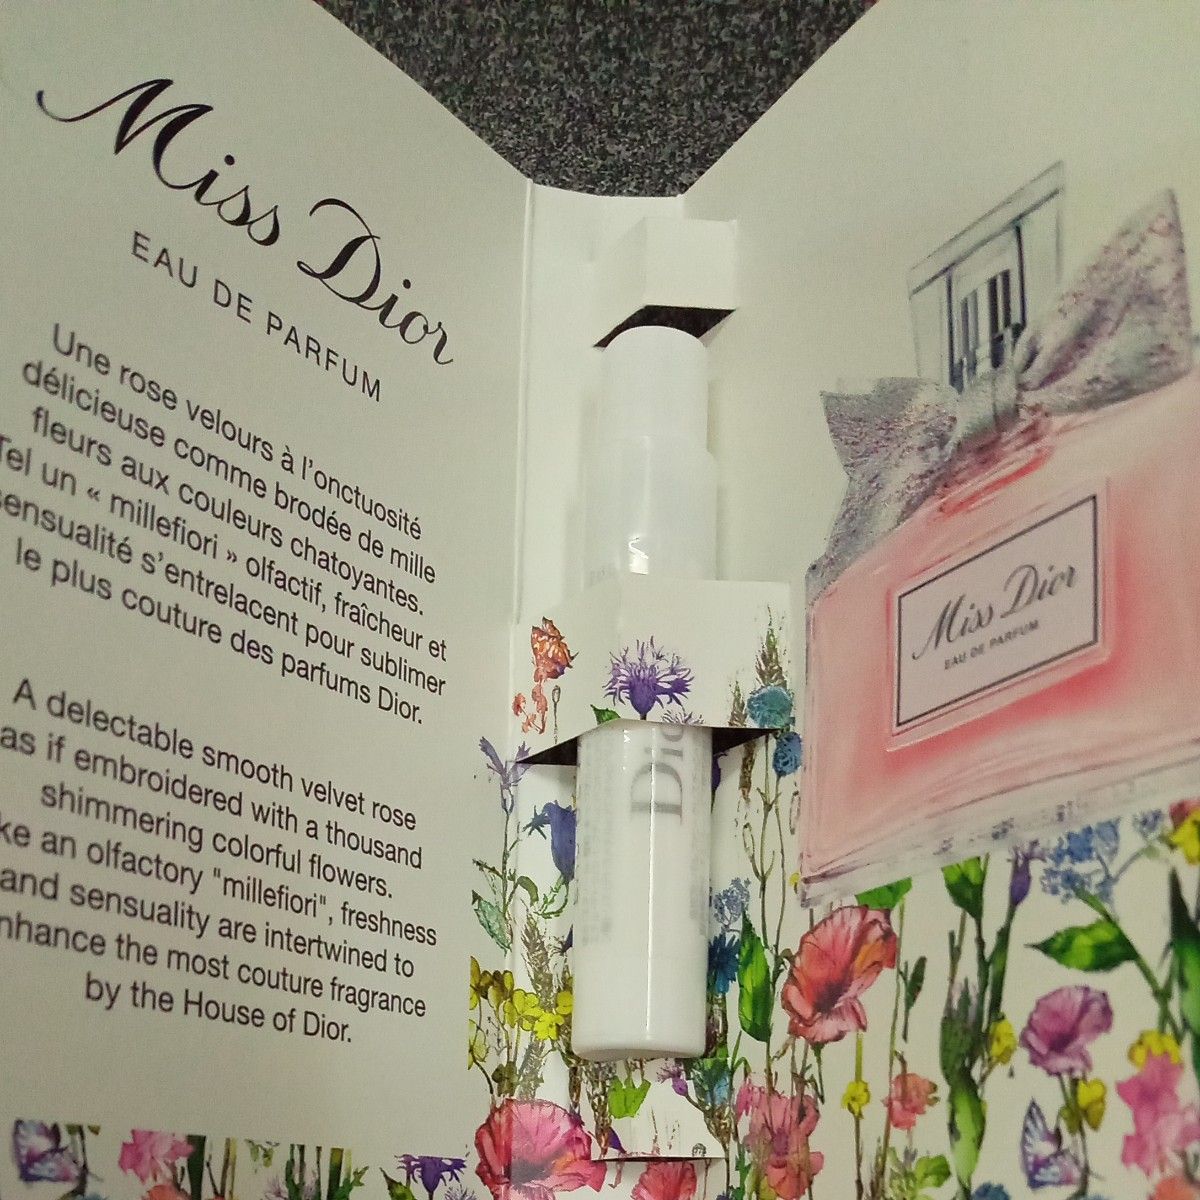 Dior ディオール ミス ディオール オードゥ パルファン メゾン クリスチャン ディオール ラッキー サンプル 香水 